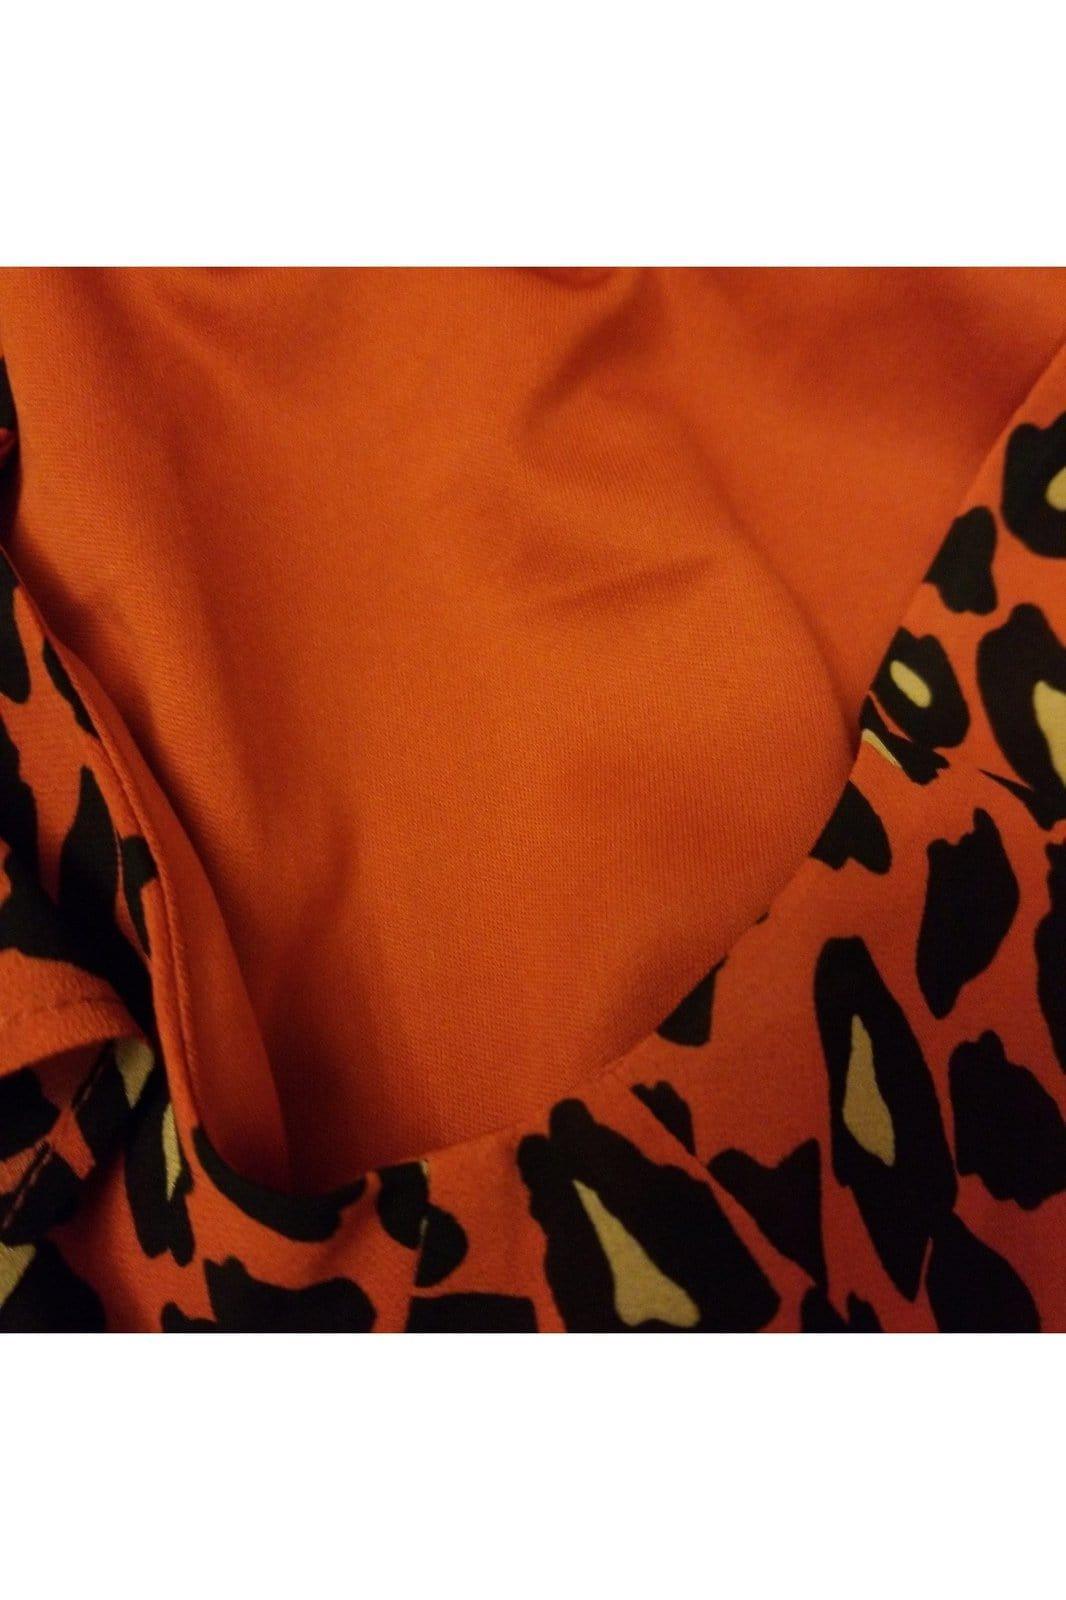 FTF Fashion to Figure women's leopard blouse size 2 - Solé Resale Boutique thrift